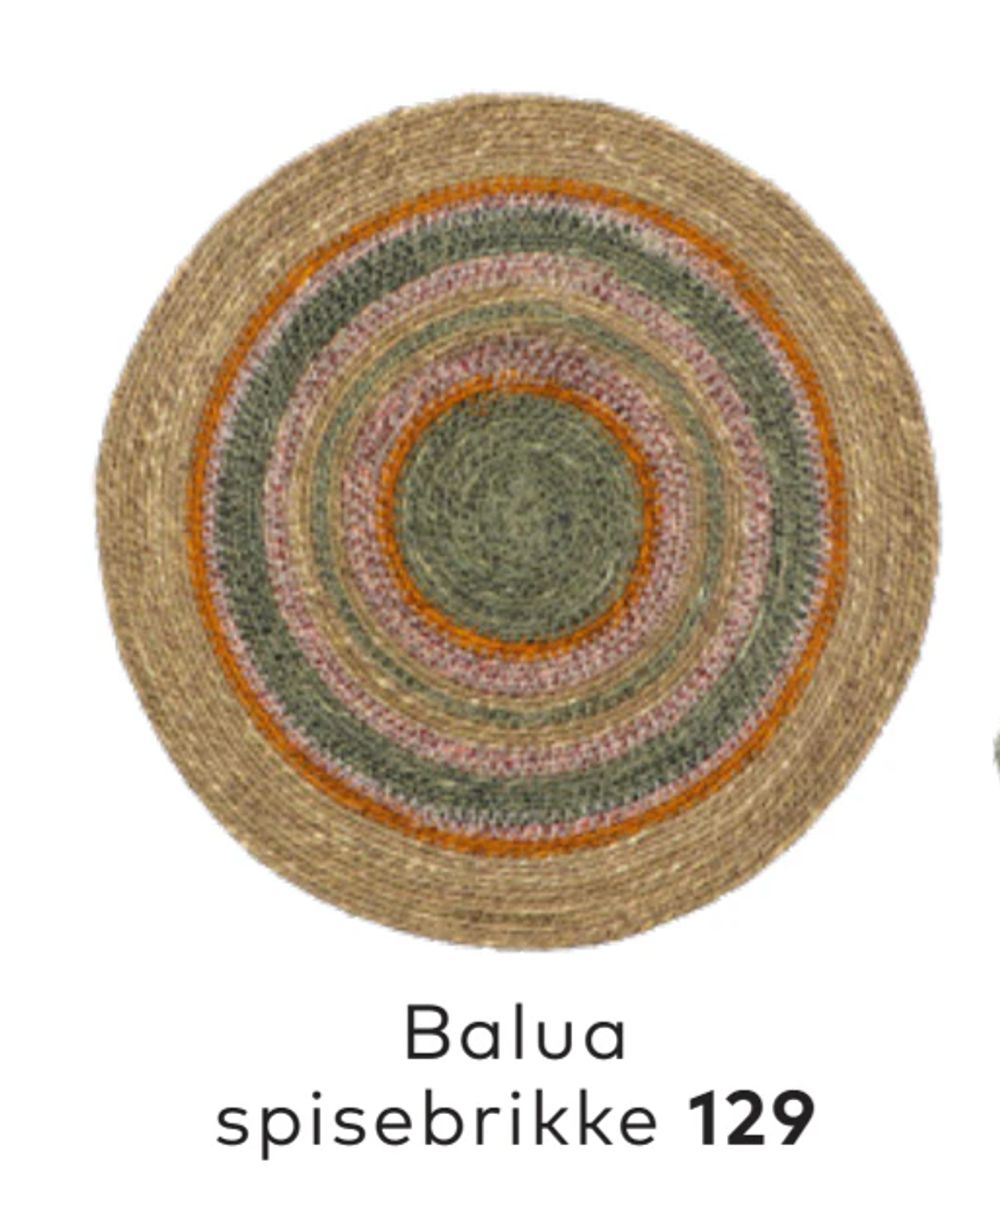 Tilbud på Balua spisebrikke fra Skeidar til 129 kr